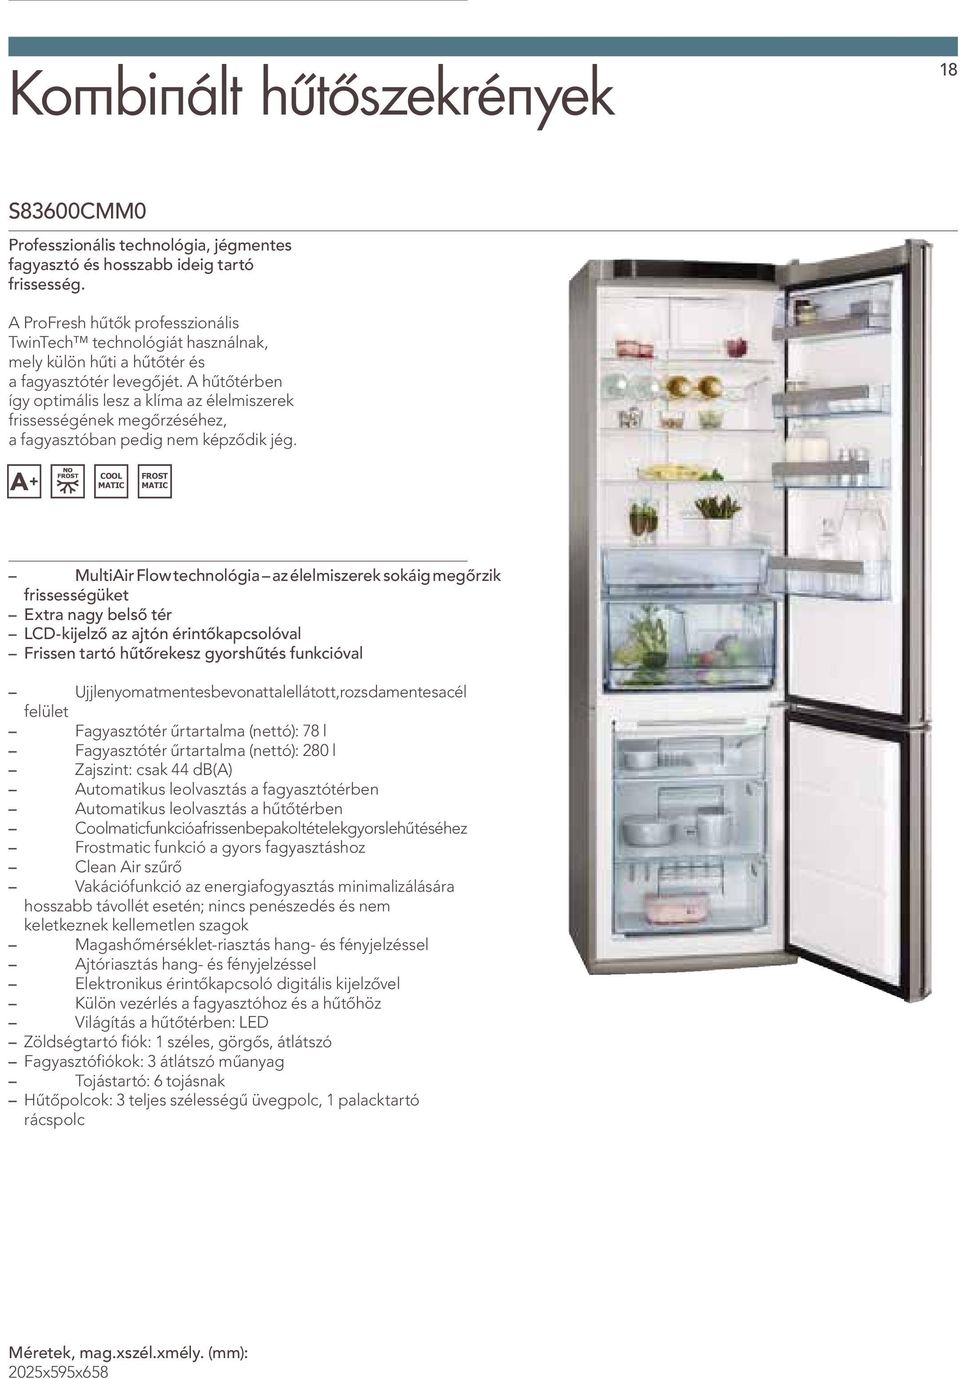 A hűtőtérben így optimális lesz a klíma az élelmiszerek frissességének megőrzéséhez, a fagyasztóban pedig nem képződik jég.